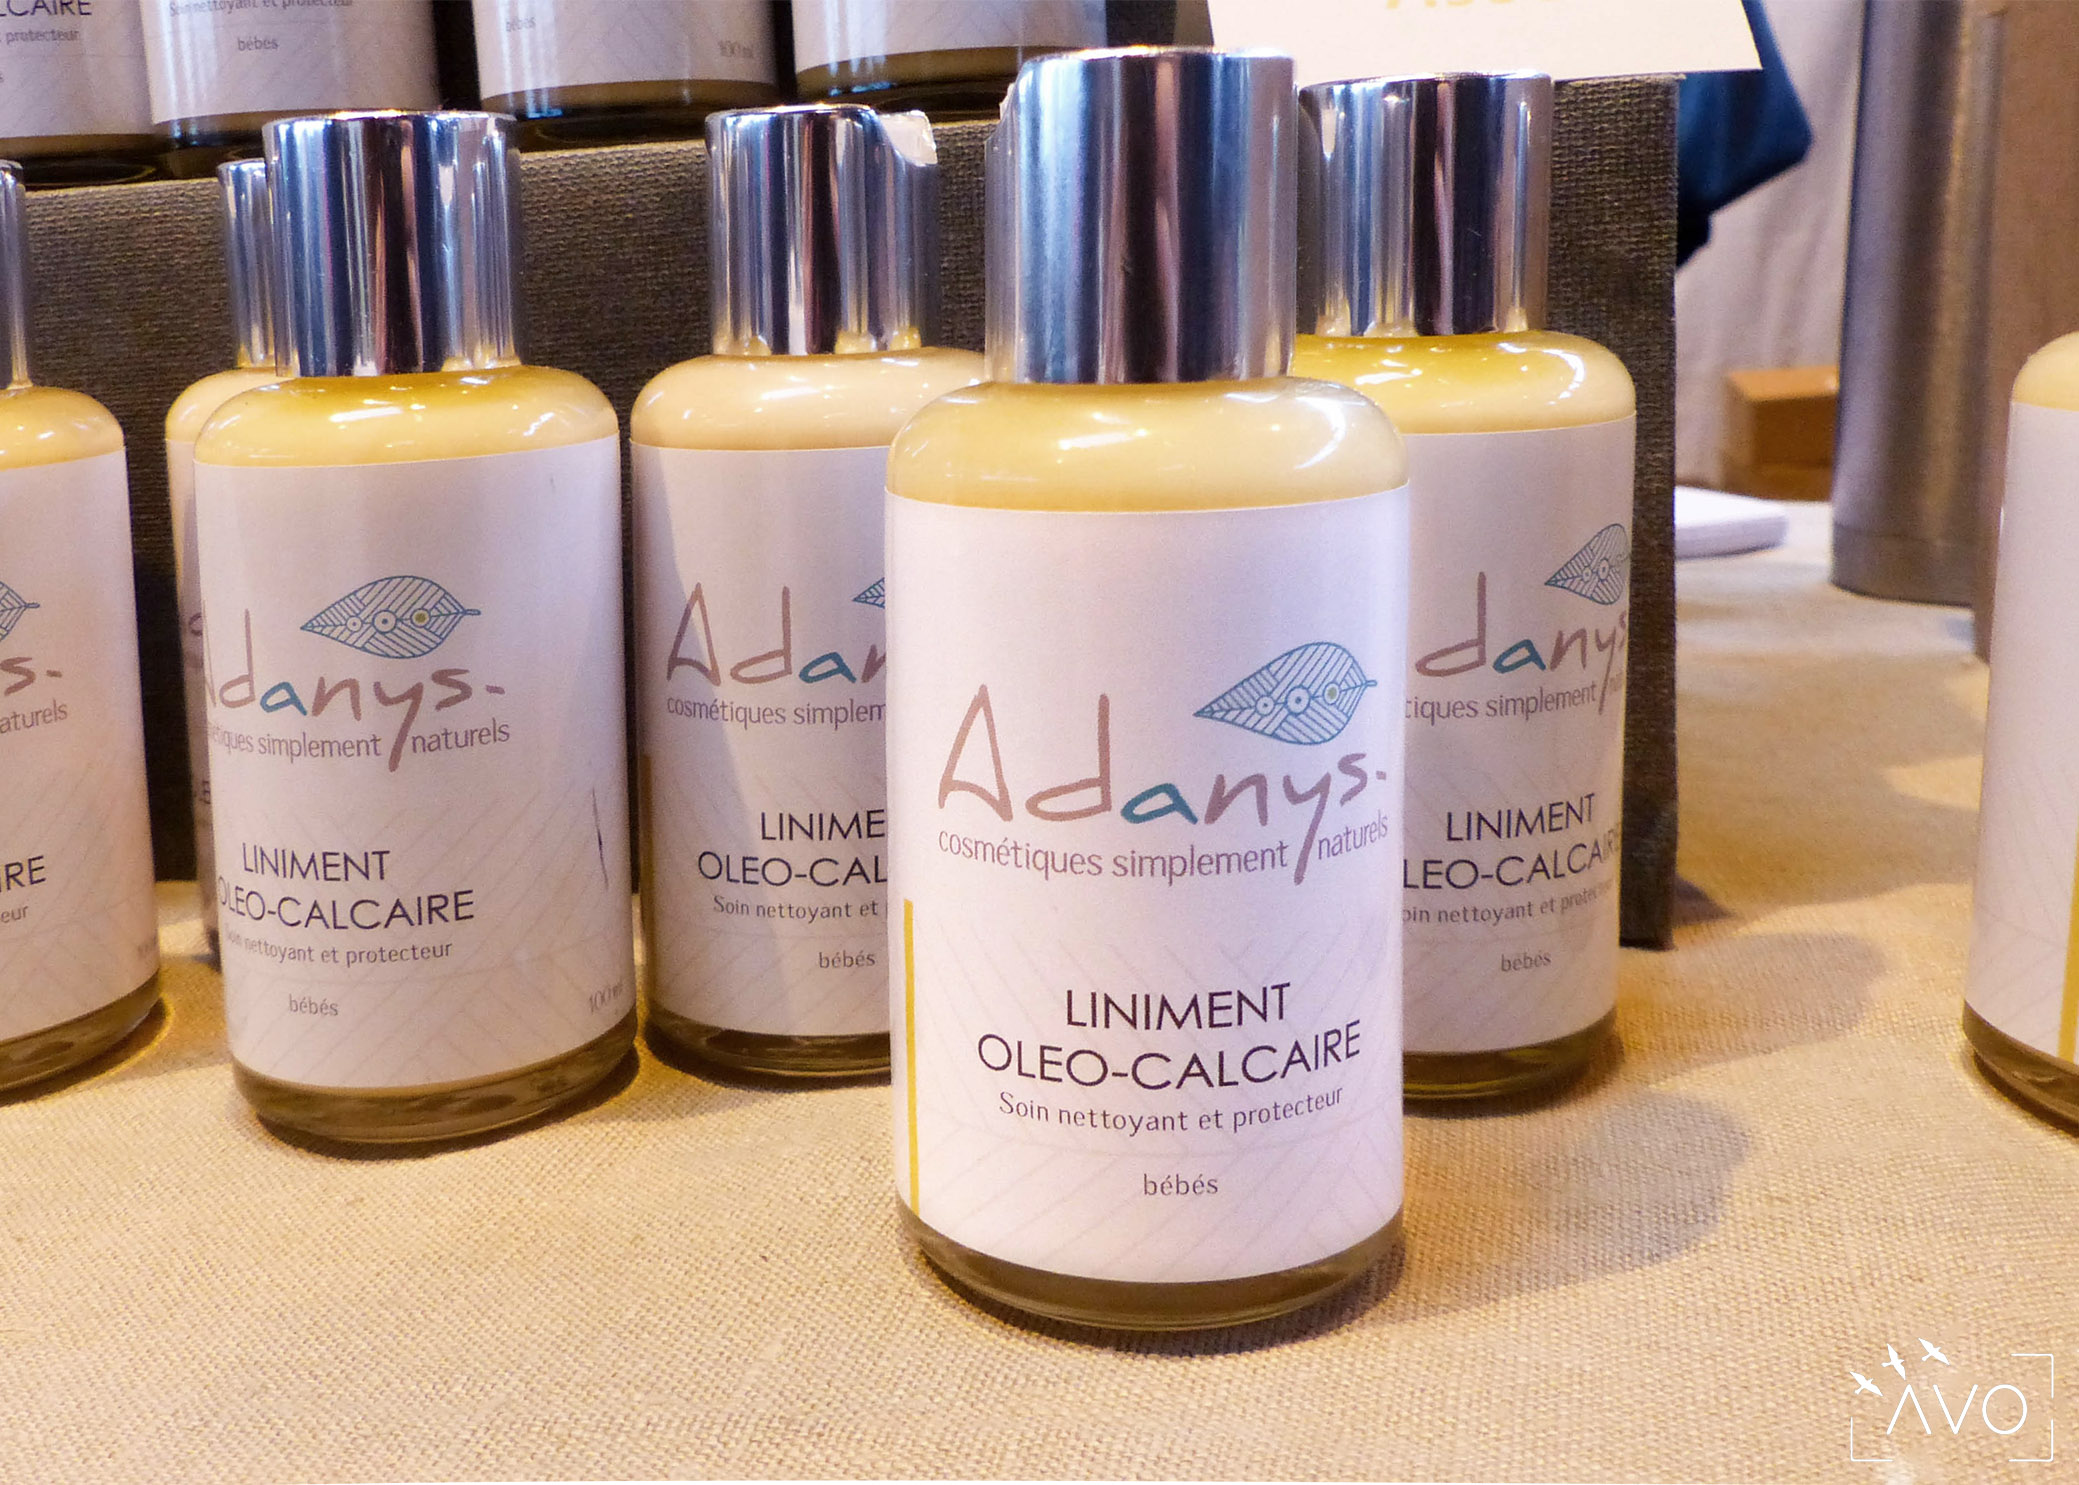 adanys cosmétiques liniment bain lingette huiles essentielles soin ingrédients biologiques auvergne bio crème huile